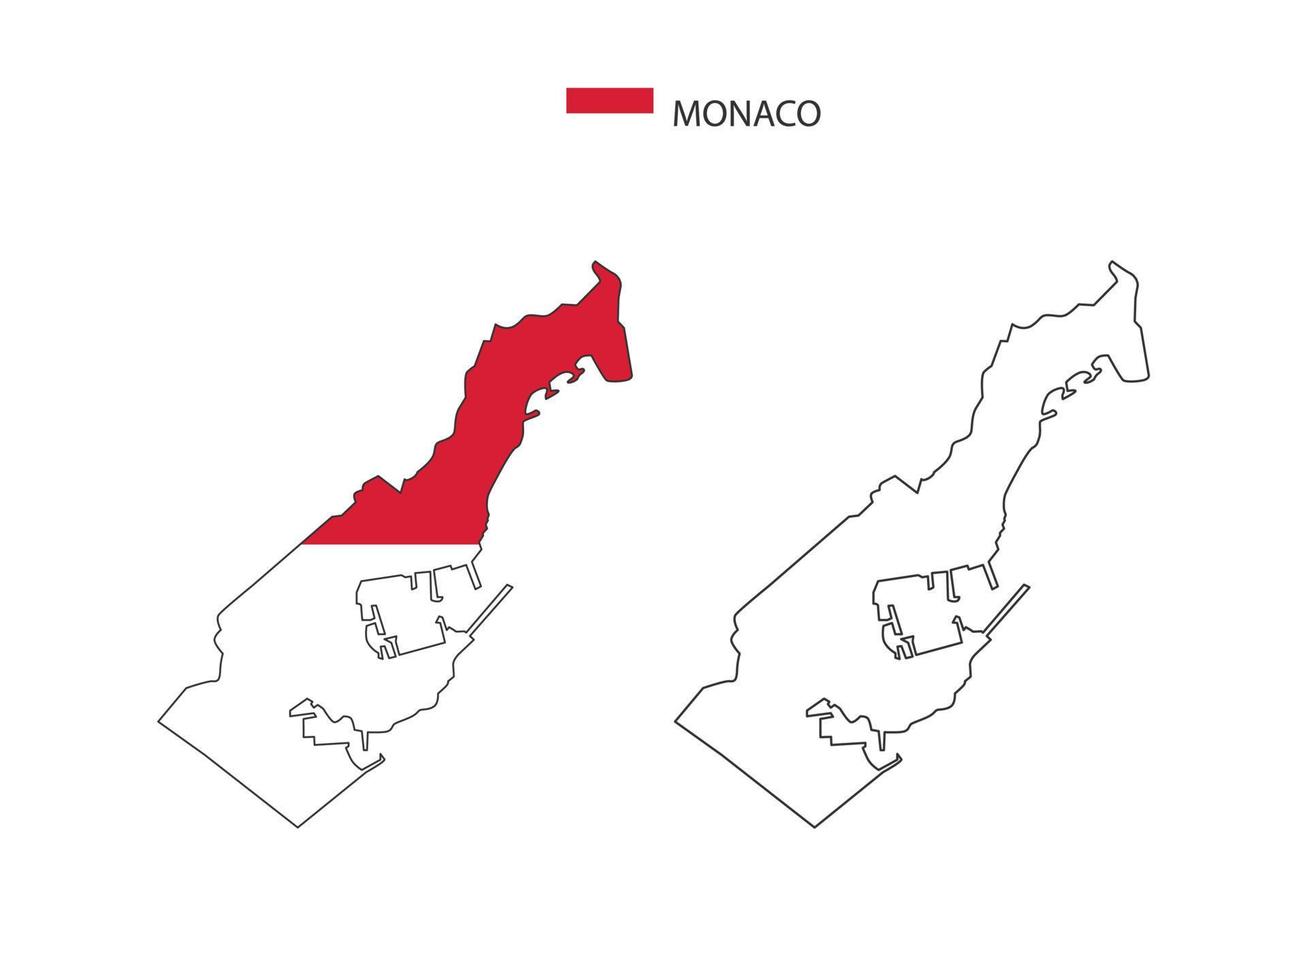 vetor da cidade do mapa de mônaco dividido pelo estilo de simplicidade do esboço. tem 2 versões, versão de linha fina preta e cor da versão da bandeira do país. ambos os mapas estavam no fundo branco.